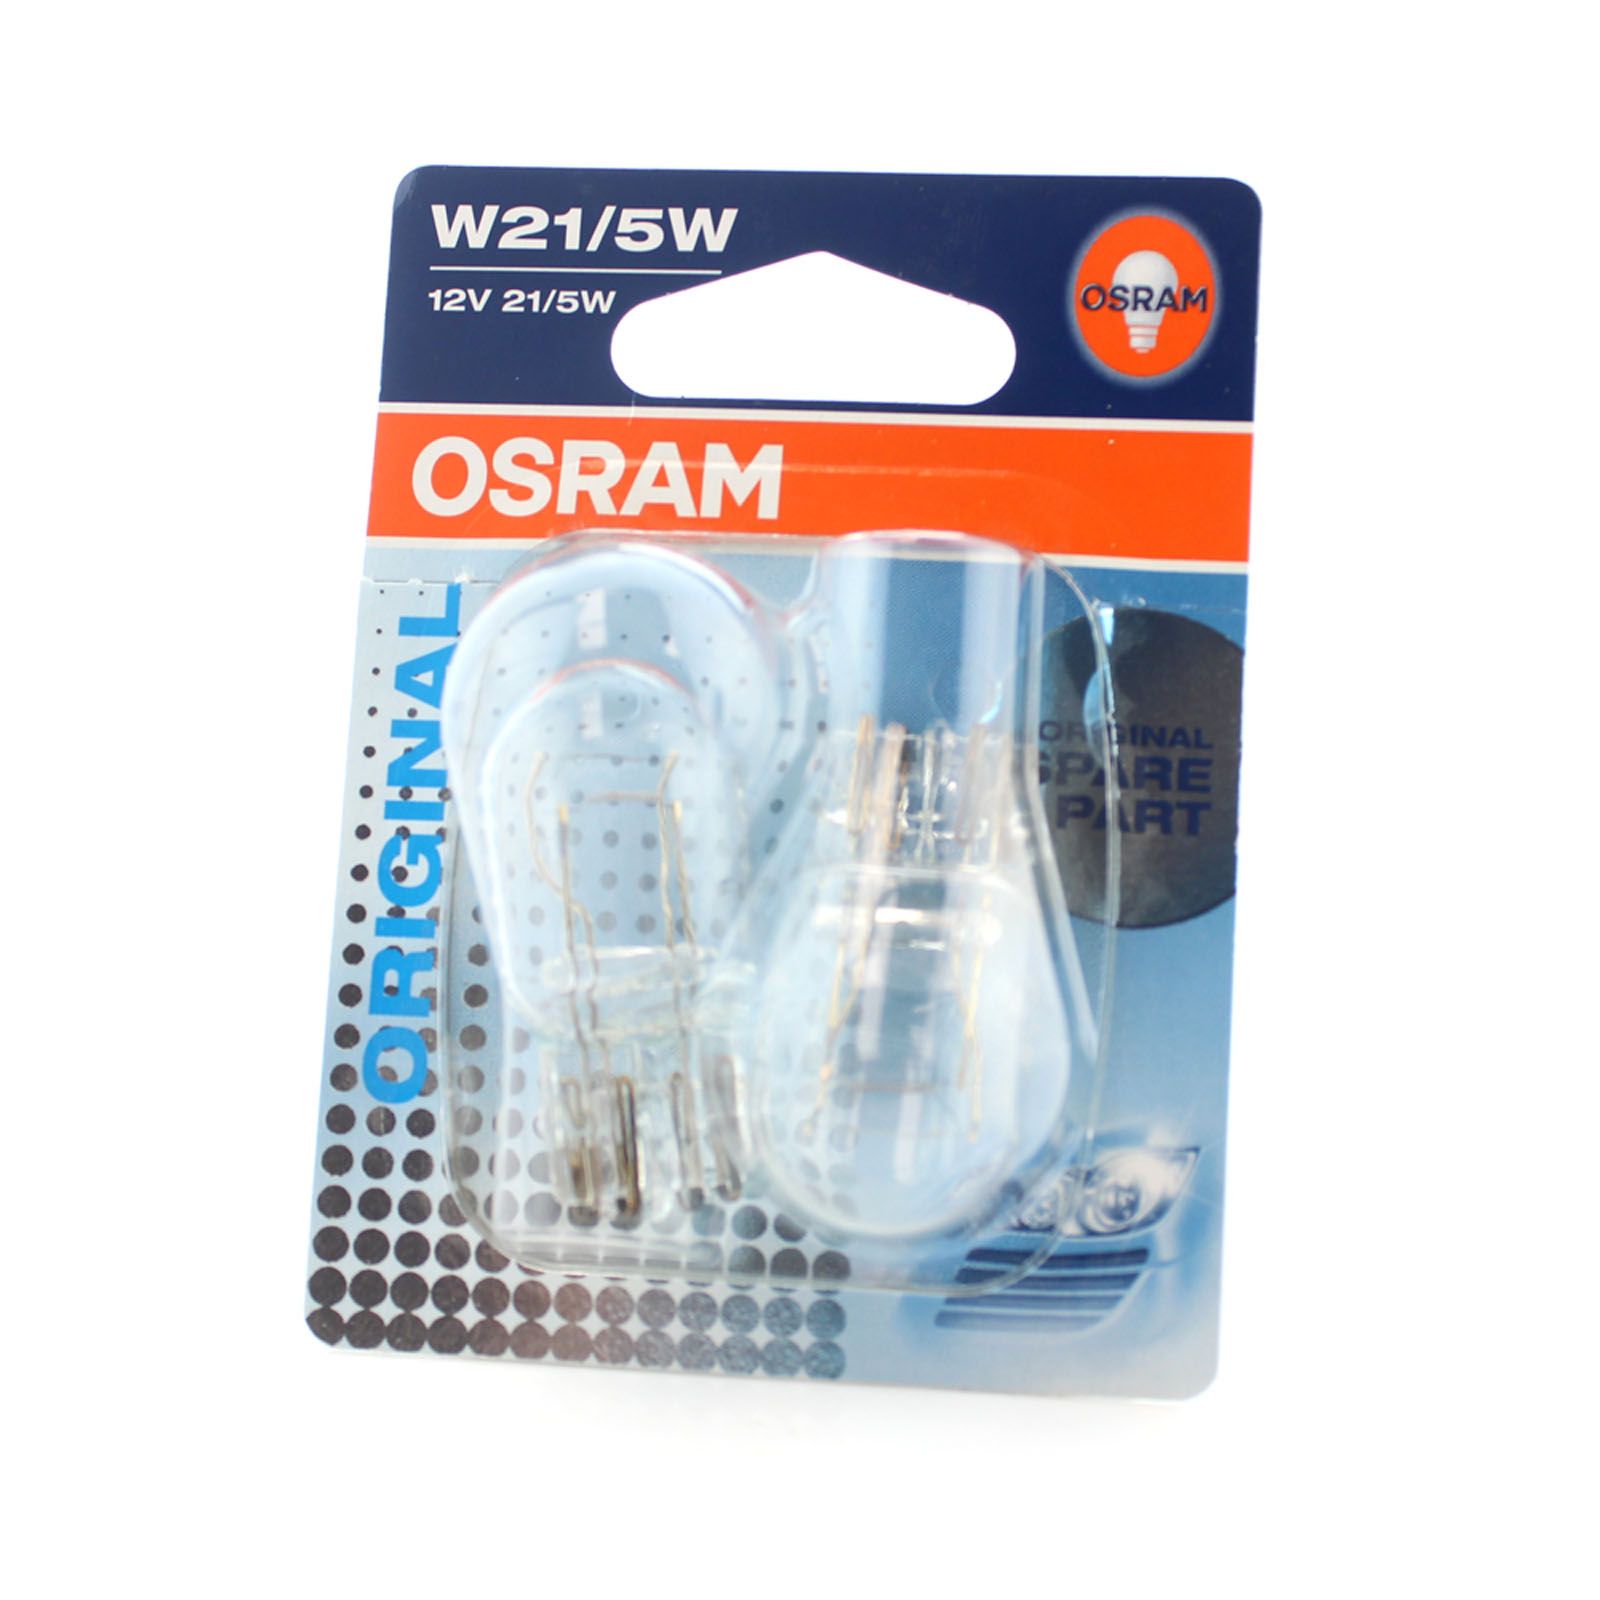 Bóng đèn xi nhan Osram W21/5W 12V